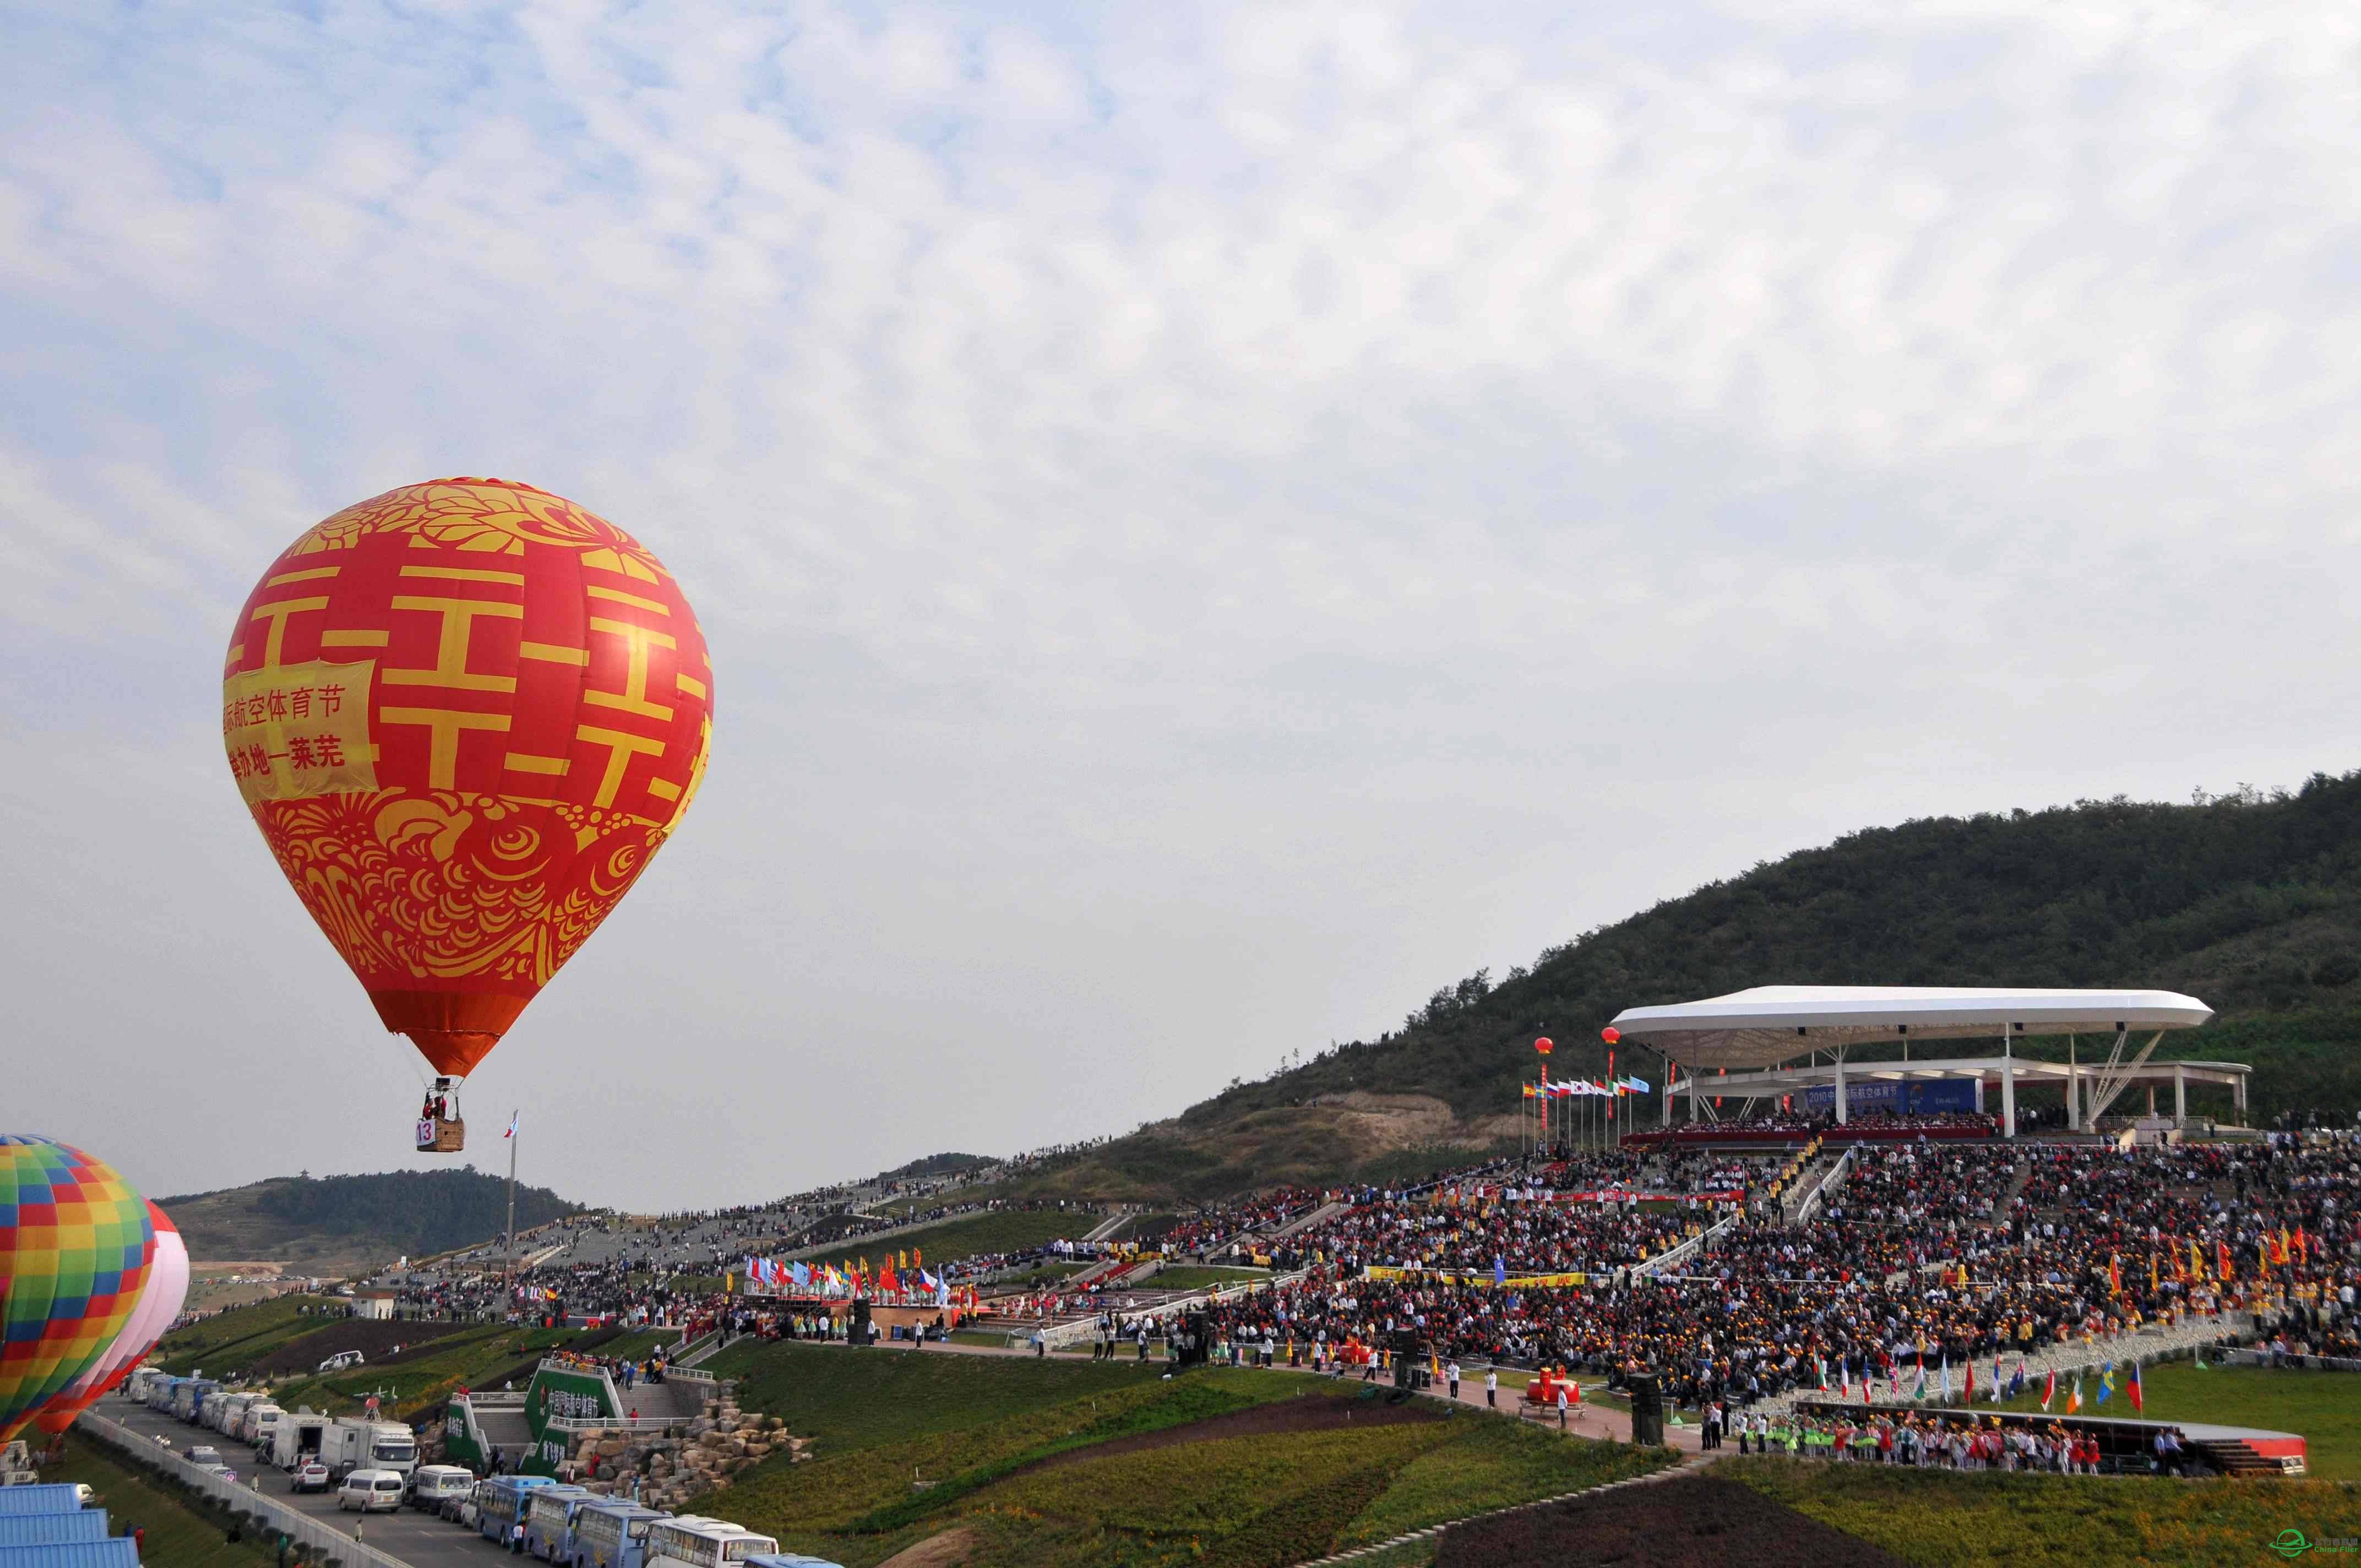 【2015中国国际航空体育节】一场属于蓝天的彩妆盛会-7959 